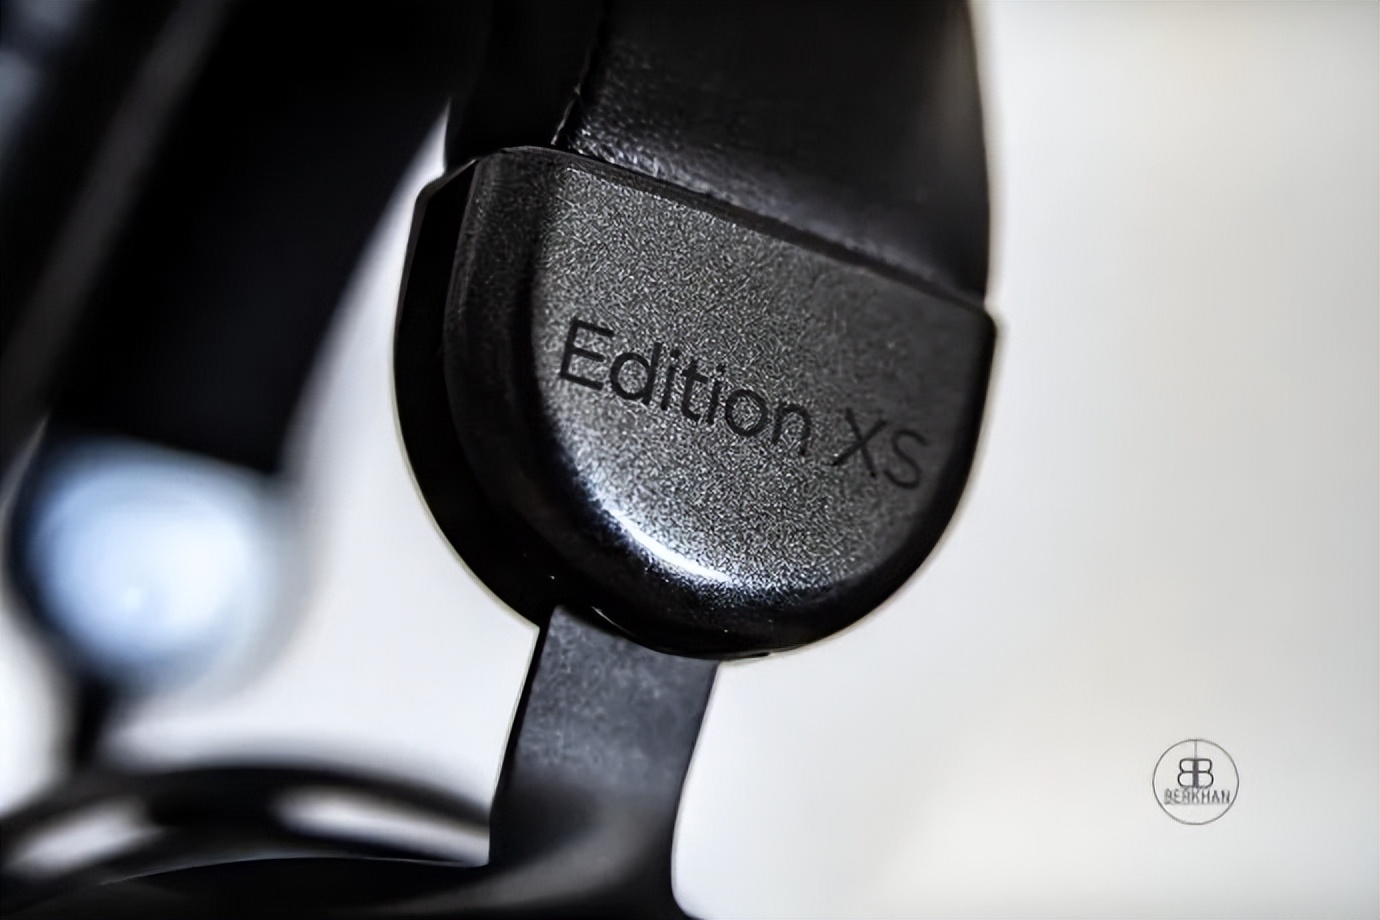 「海外评测」Edition XS可能是400-500美元范围内最好的耳机